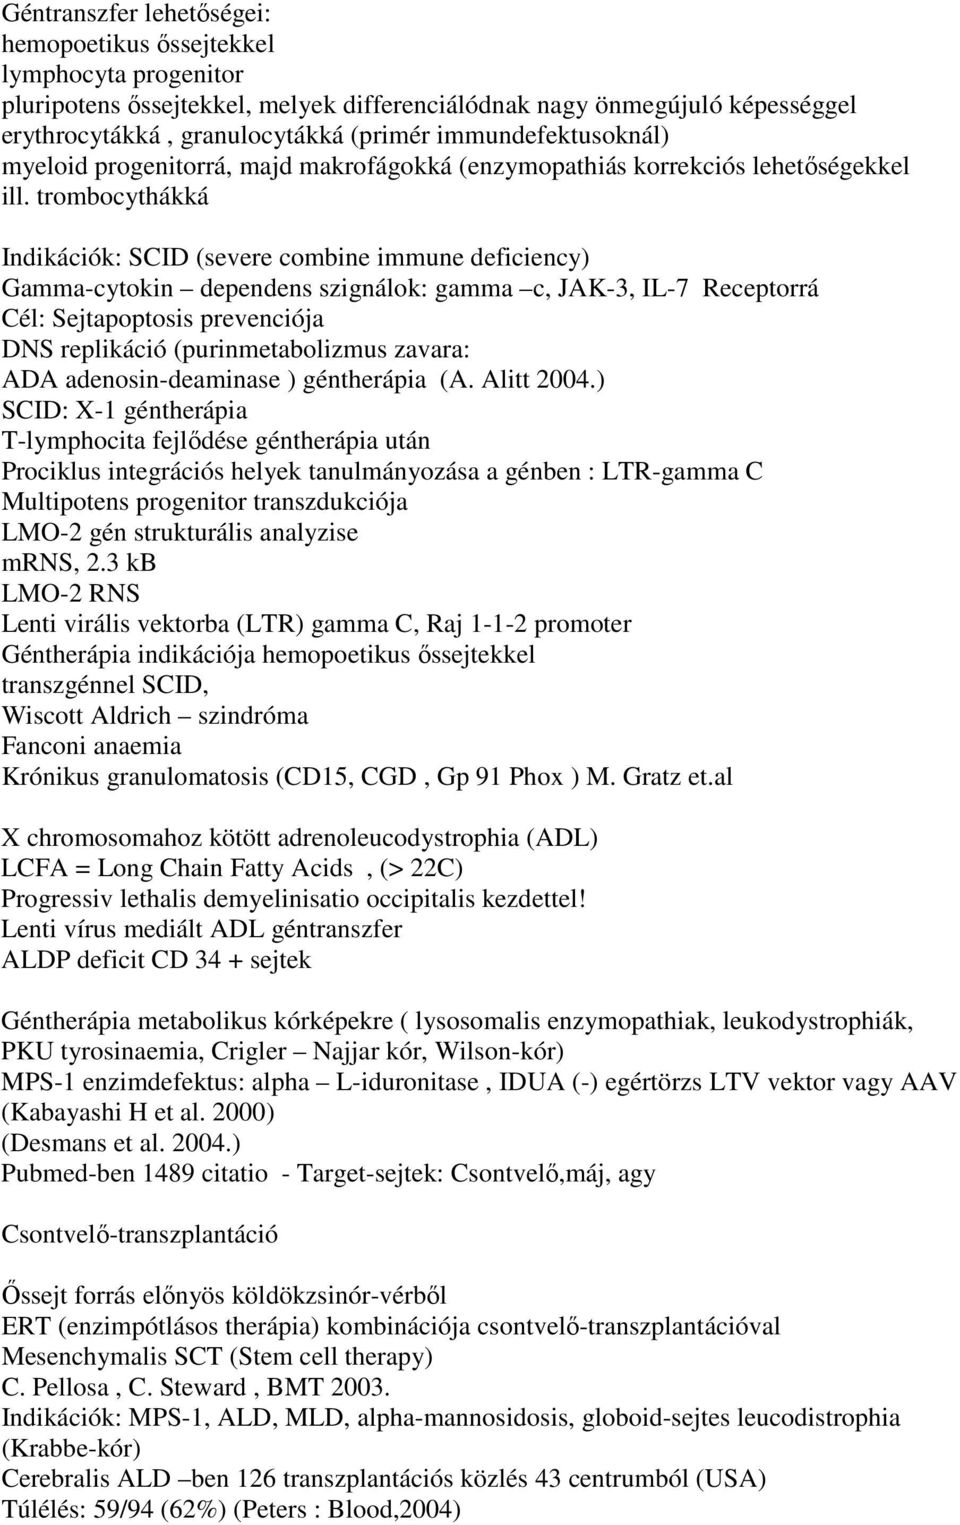 trombocythákká Indikációk: SCID (severe combine immune deficiency) Gamma-cytokin dependens szignálok: gamma c, JAK-3, IL-7 Receptorrá Cél: Sejtapoptosis prevenciója DNS replikáció (purinmetabolizmus